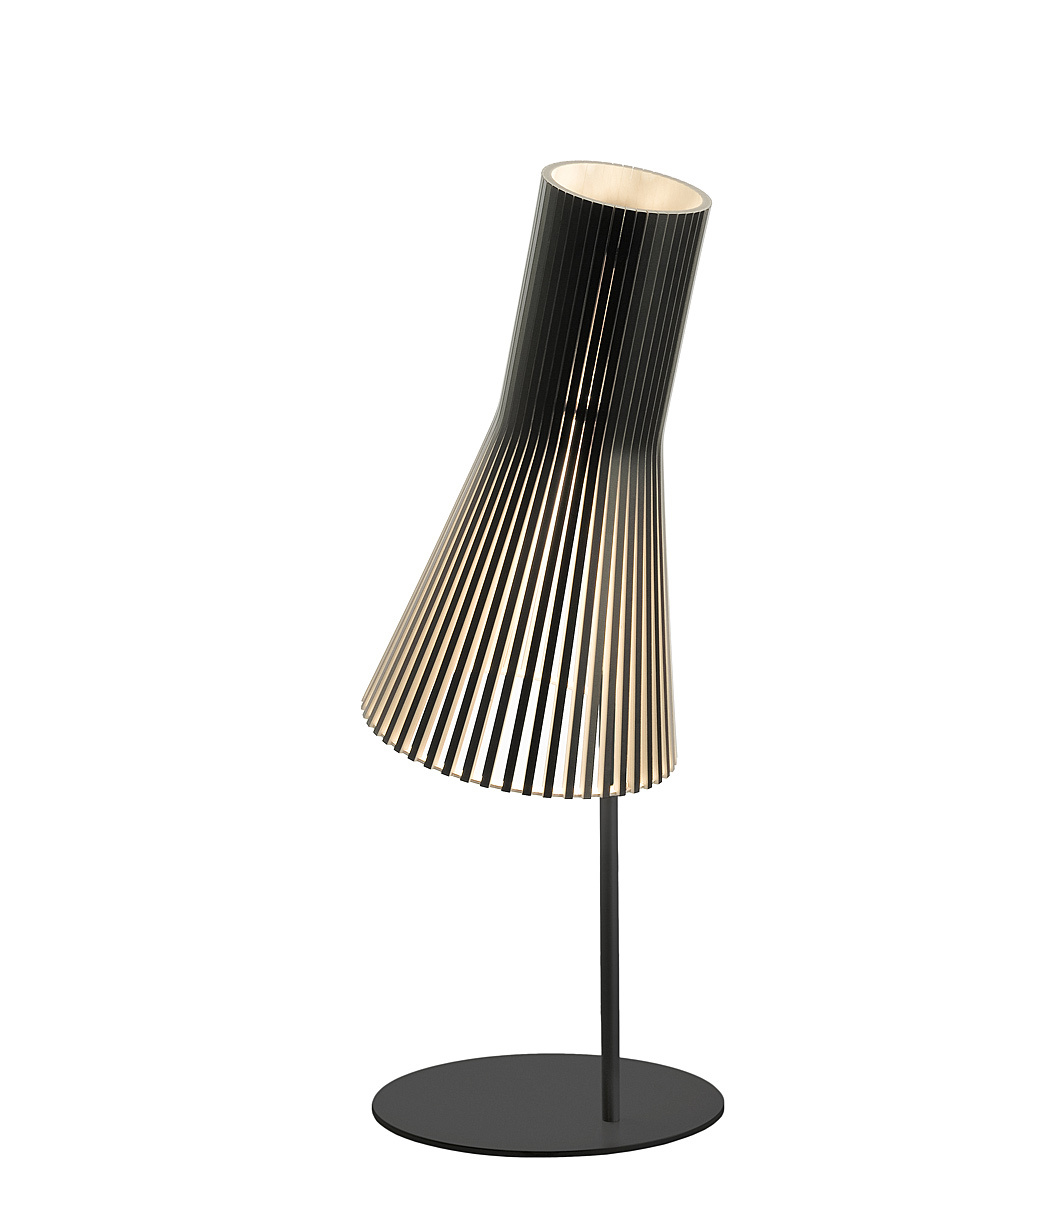 Lampe de table Secto 4220 est disponible en stratifié noir